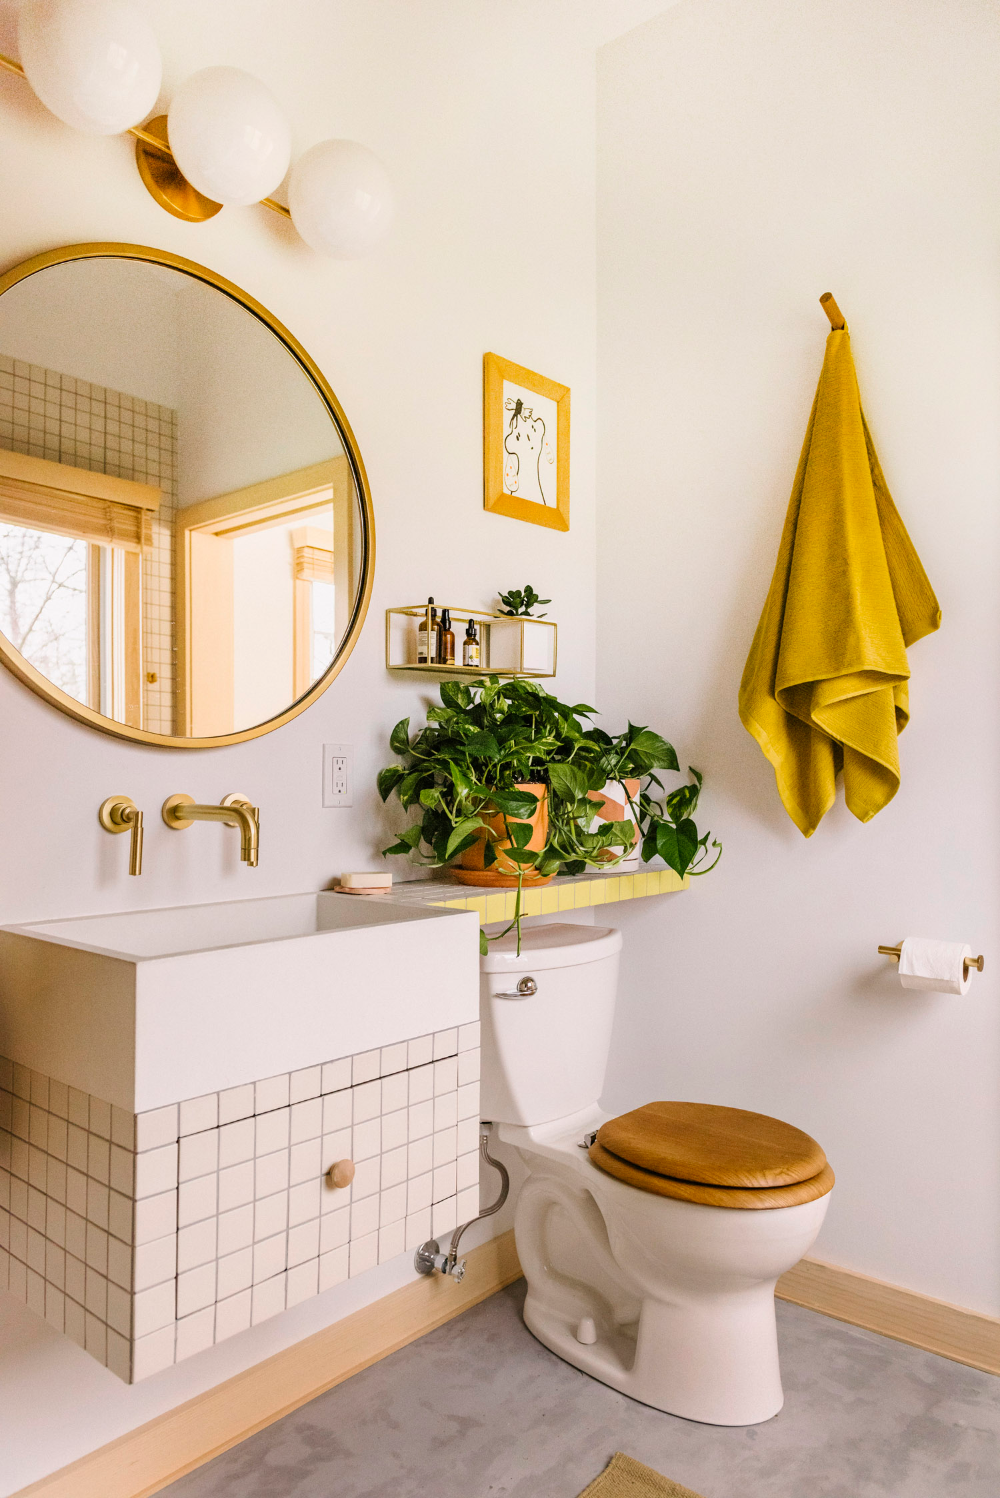 Bí quyết cho căn phòng tắm luôn tươi sáng, sinh động là bổ sung gam màu vàng nắng - Ảnh 6.